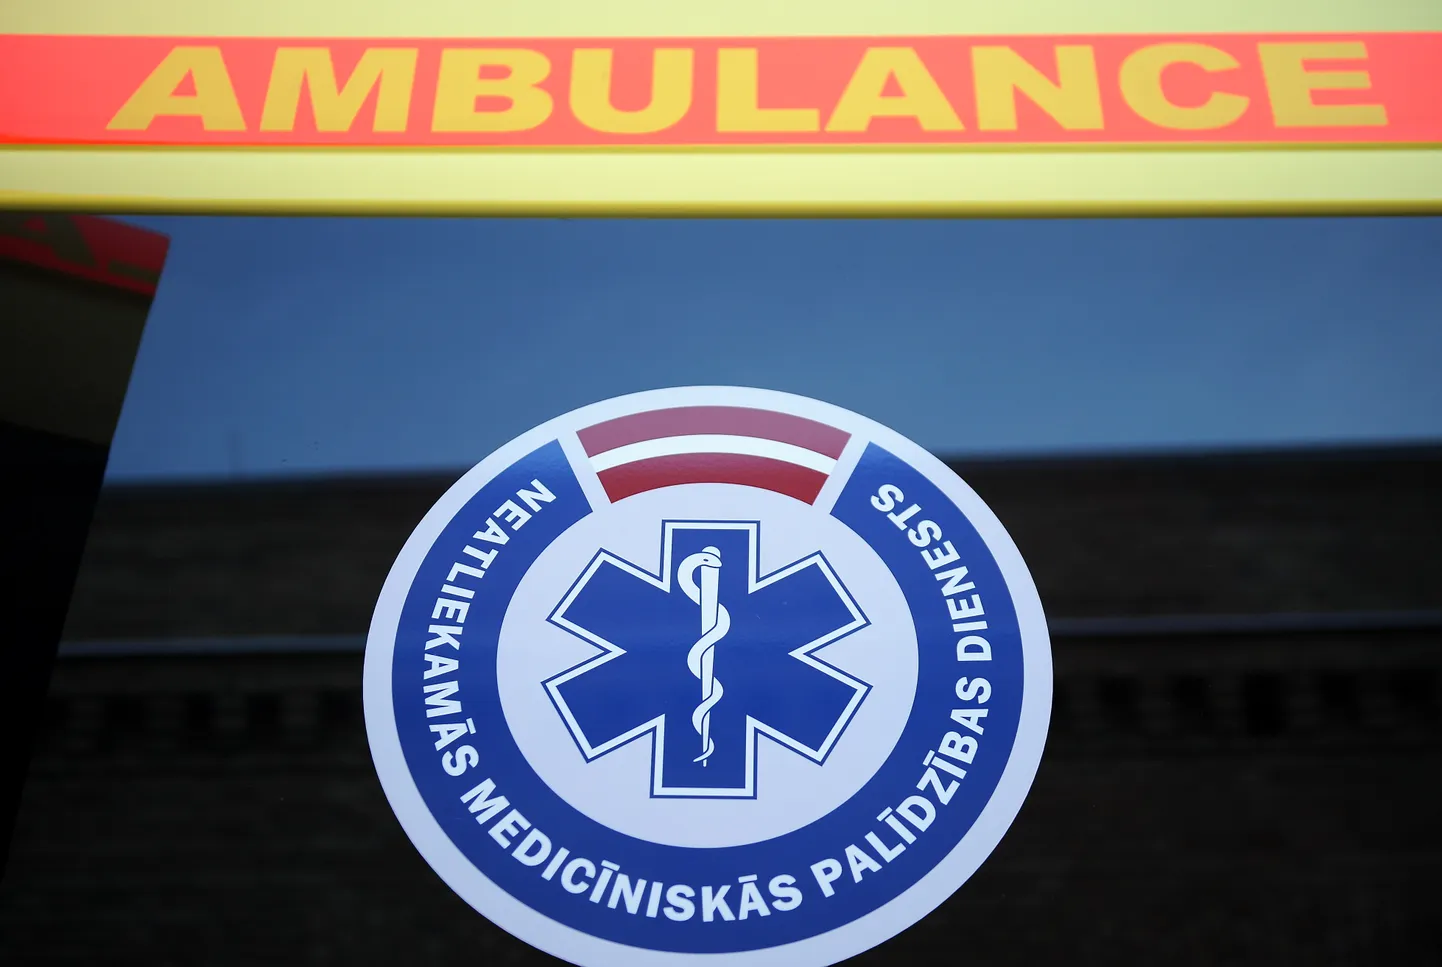 Логотип Службы неотложной медицинской помощи (NMPD). Иллюстративное фото.